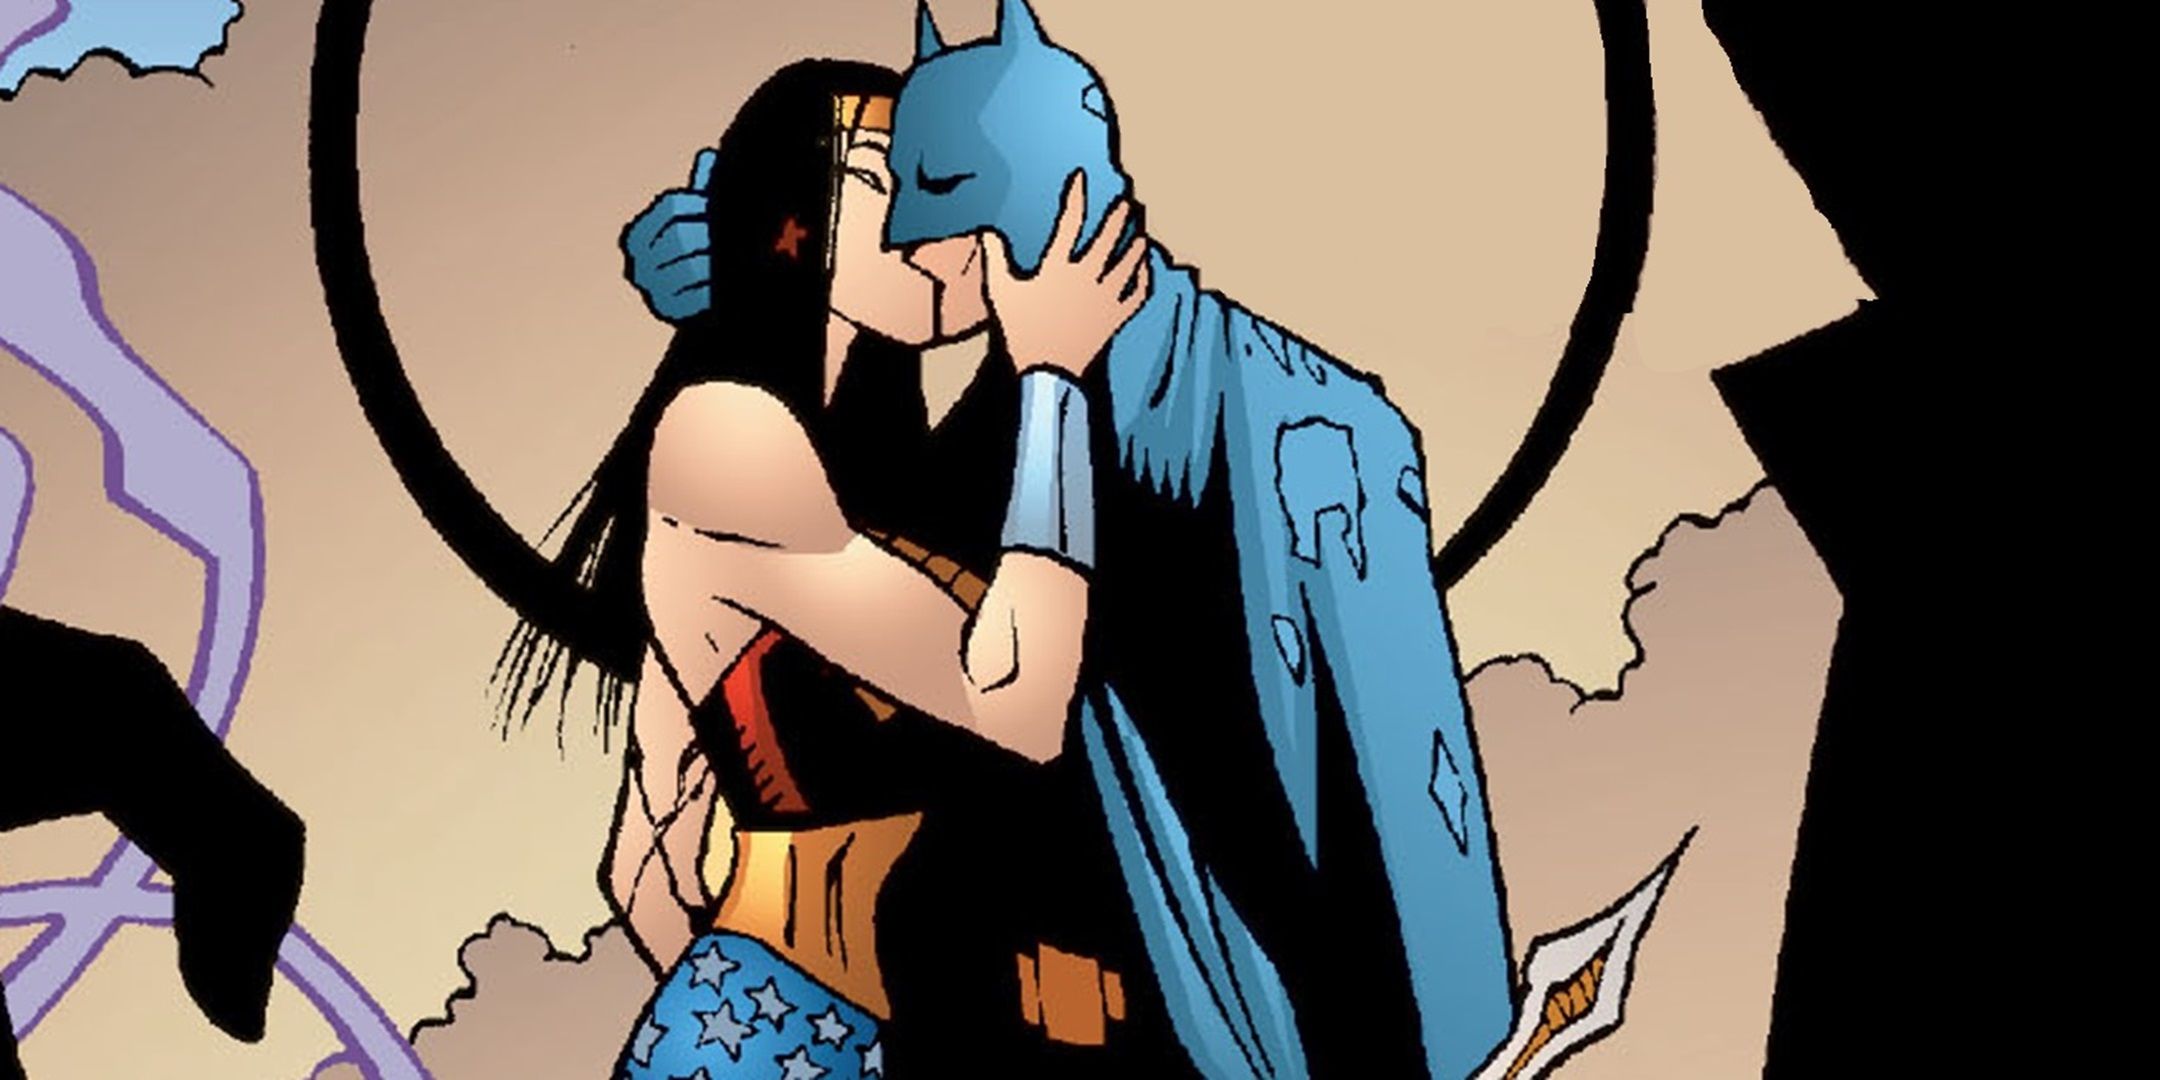 Batman kissing Wonder Woman